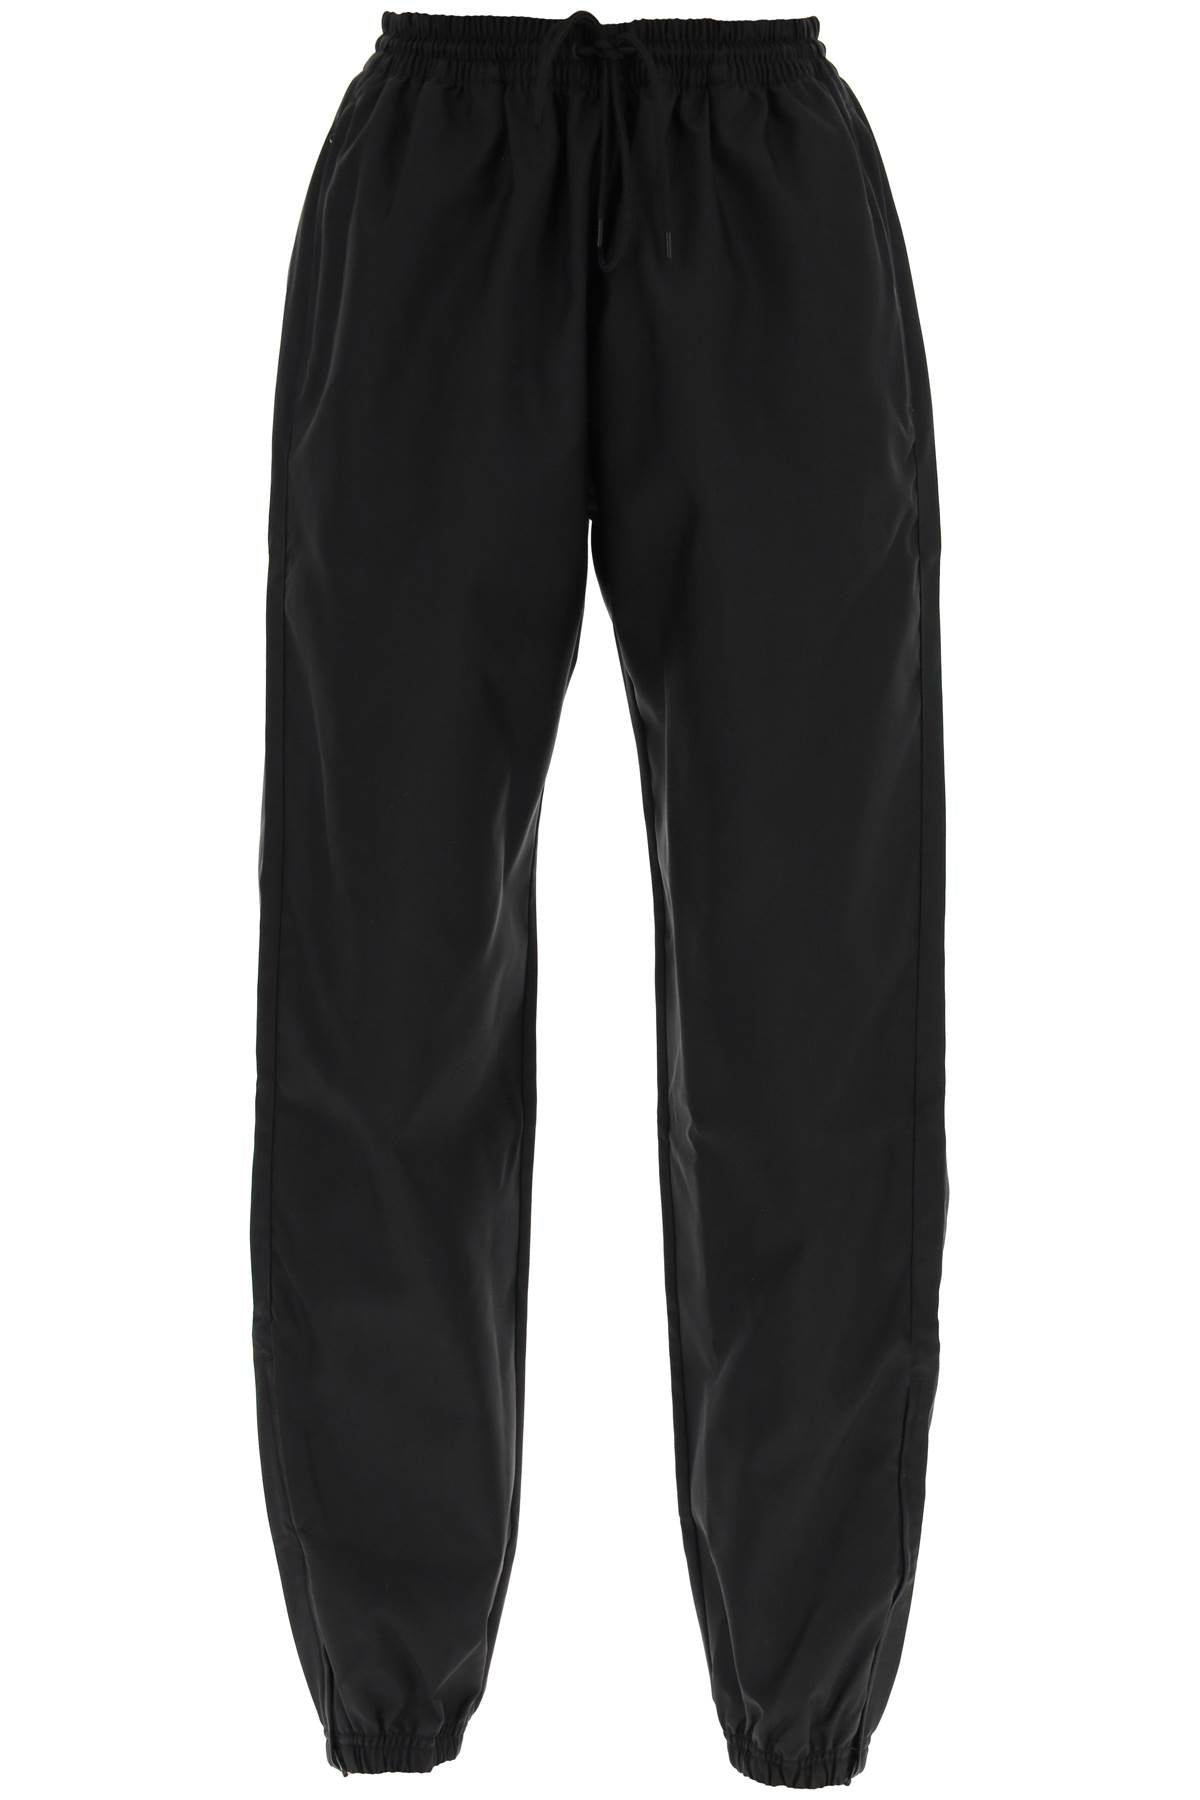 Wardrobe.nyc high-waisted nylon pants-Wardrobe.Nyc-Urbanheer